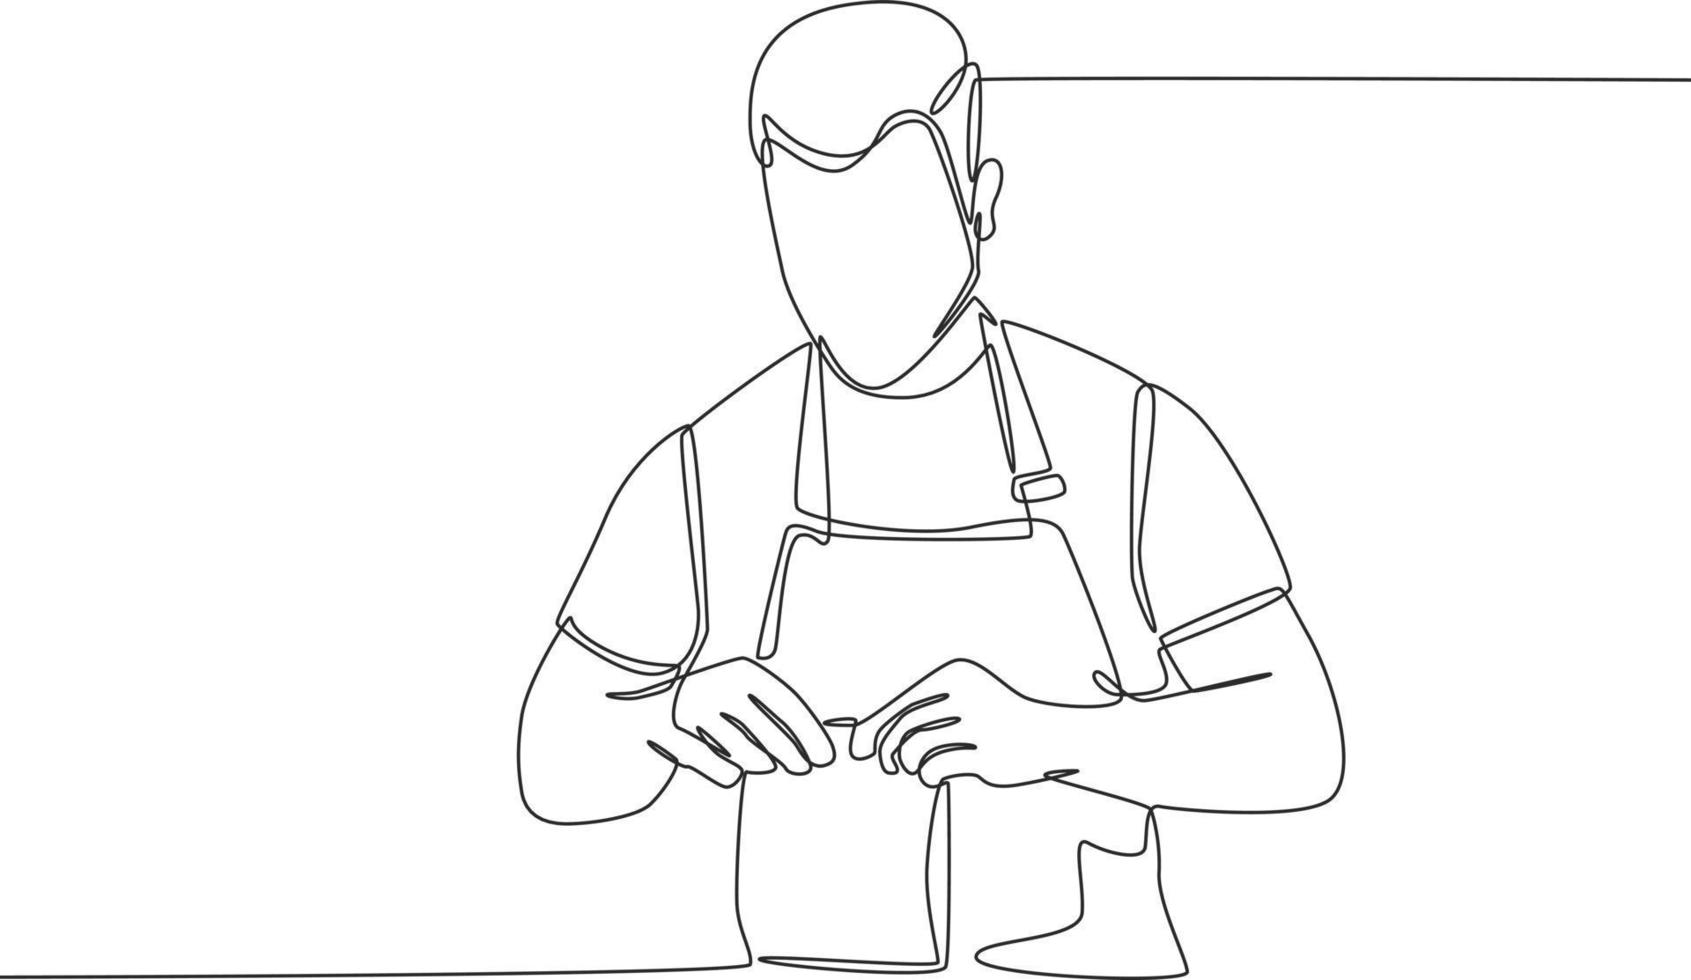 el barista de dibujo de línea continua simple está envolviendo una bolsa de papel al cliente. comida para llevar y concepto de servicio. ilustración de vector gráfico de diseño de dibujo de línea continua.